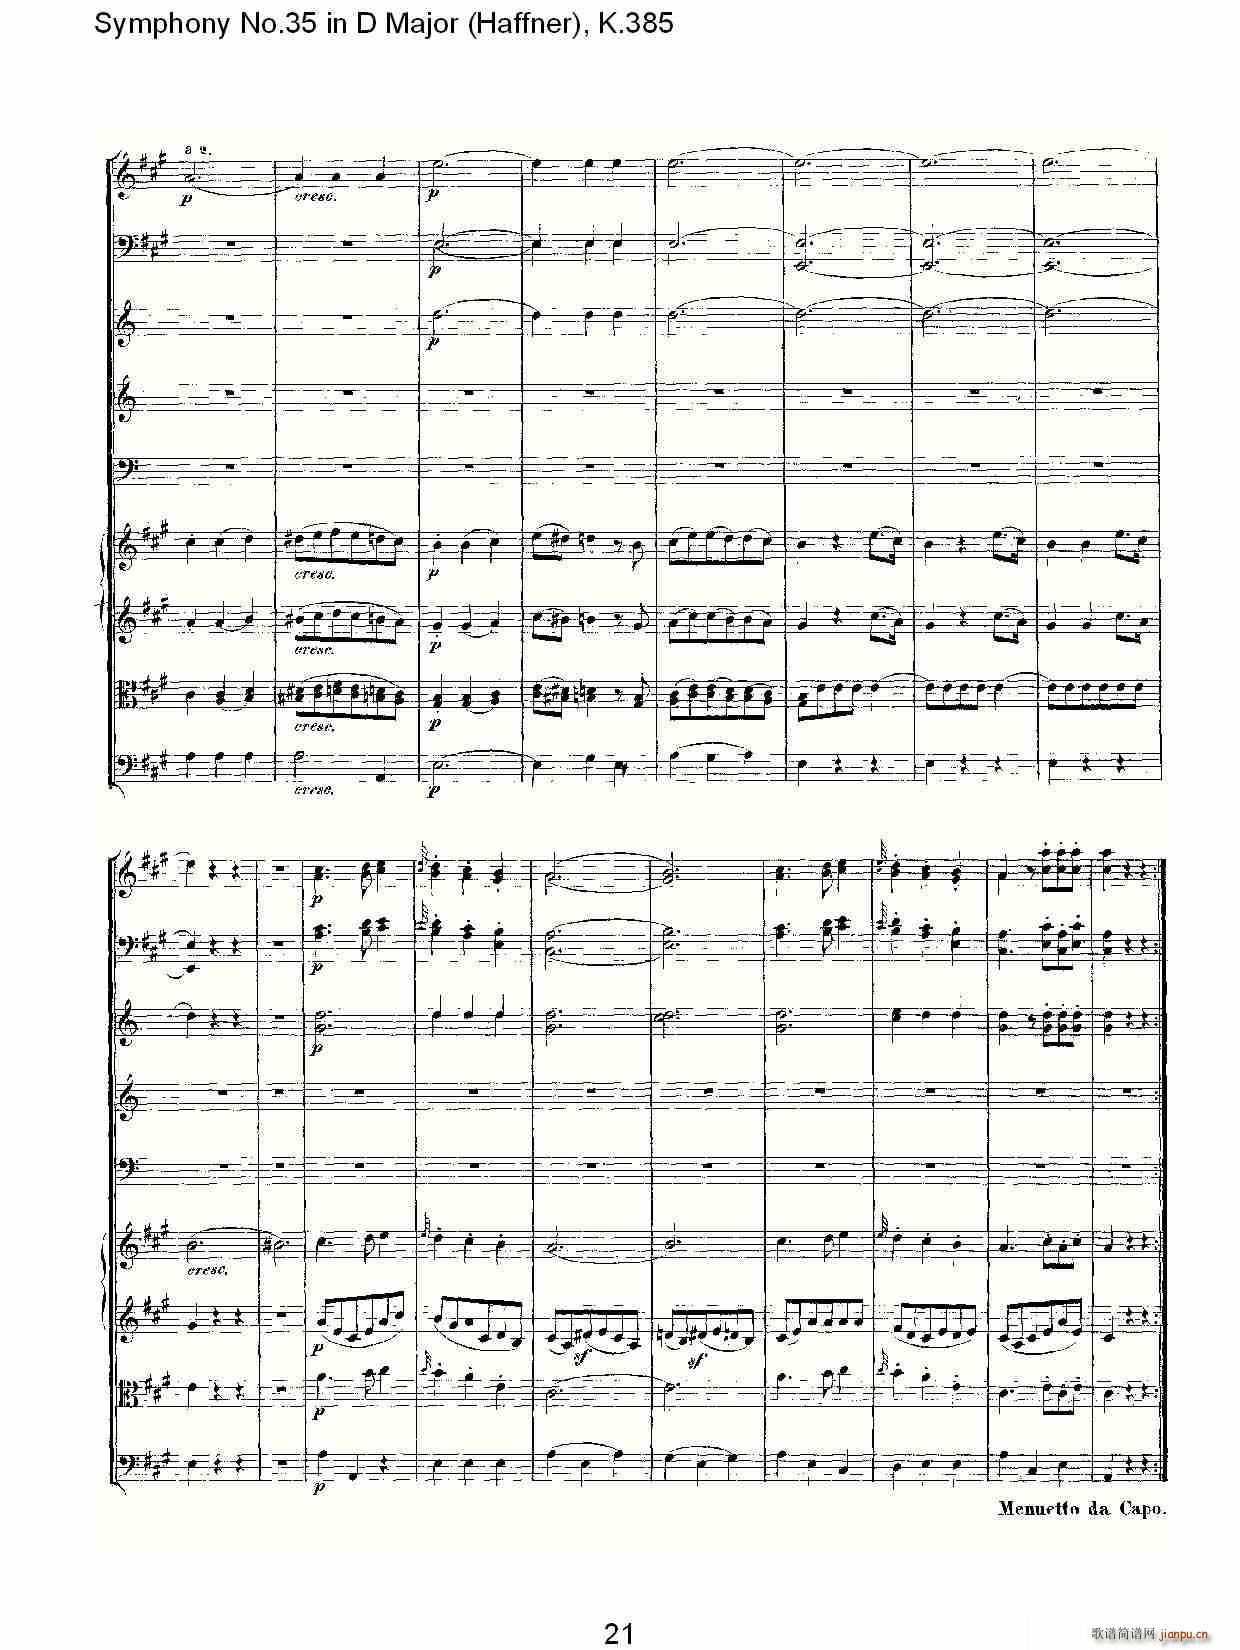 Symphony No.35 in D Major, K.385(ʮּ)21